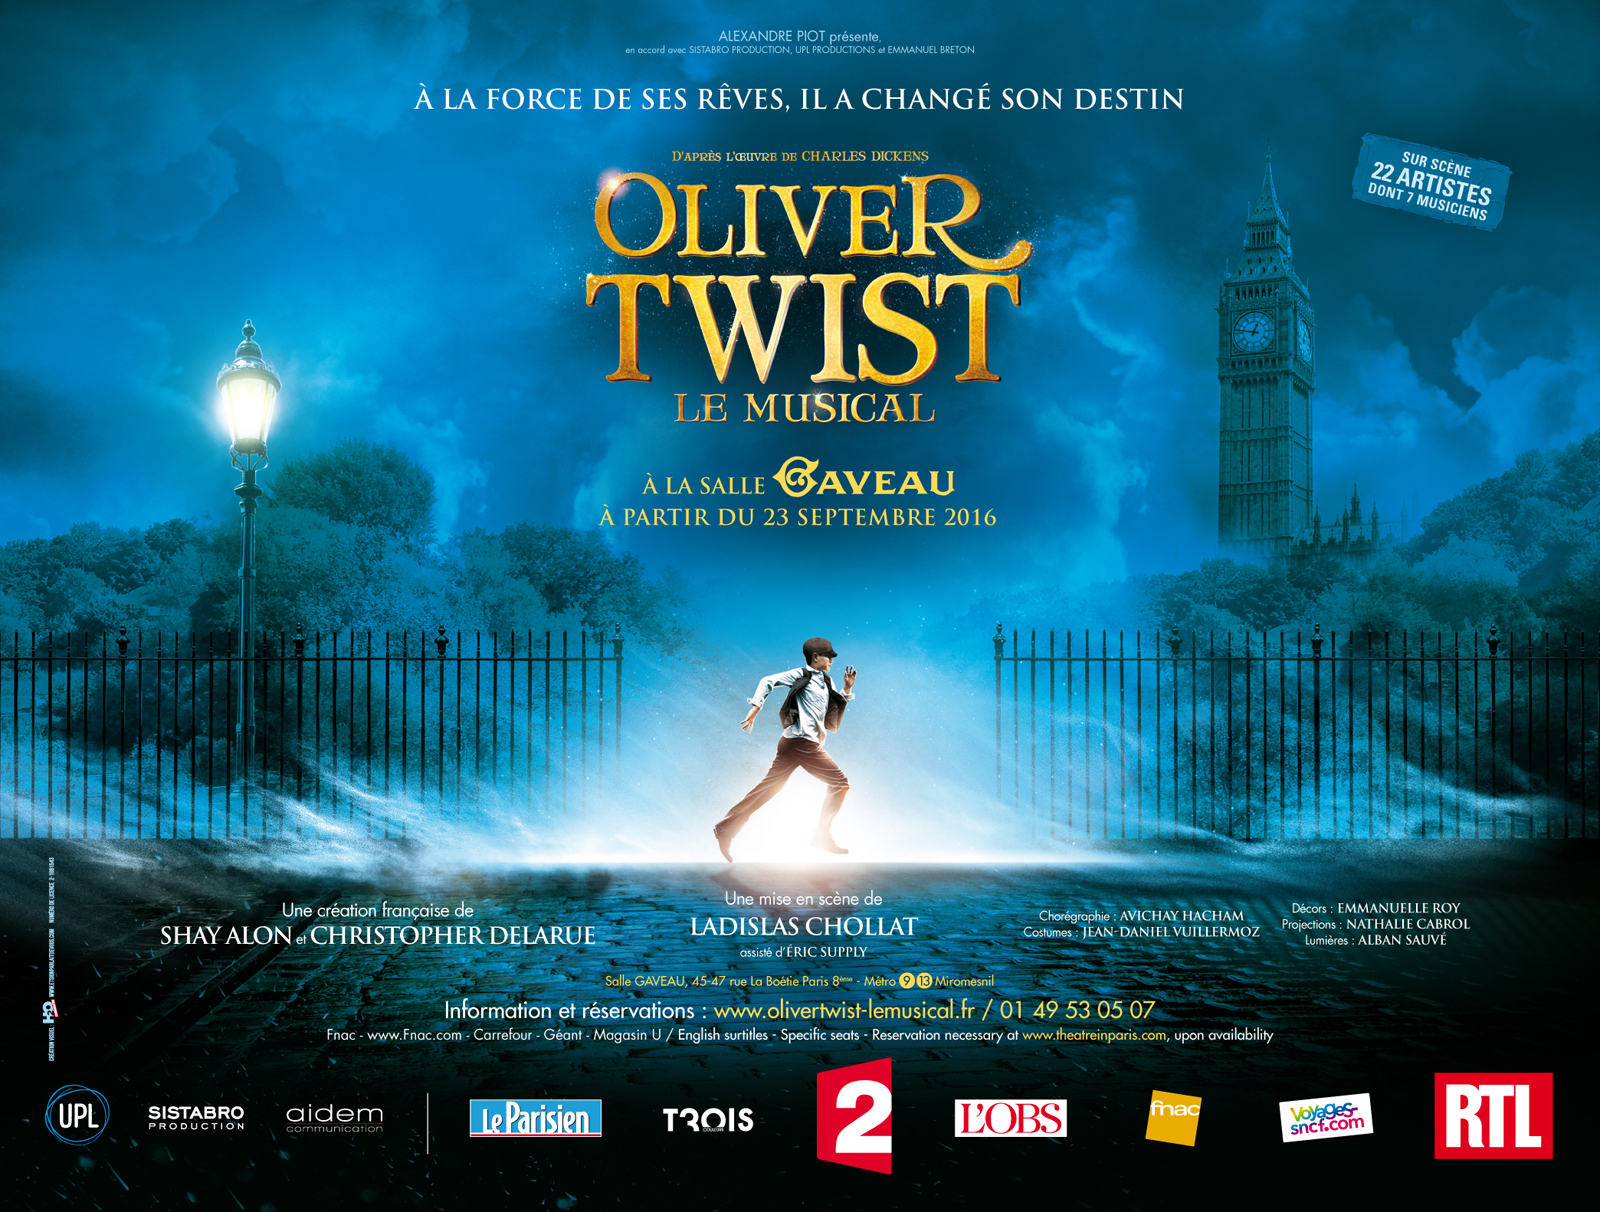 Affiche-spectacle-Oliver-Twist-le-musical-Salle-Gaveau-Paris-à-partir-du-23-septembre-2016-création-française-de-Shay-Alon-Christophe-Delarue-mise-en-scène-Ladislas-Cholat-Charles-Dickens